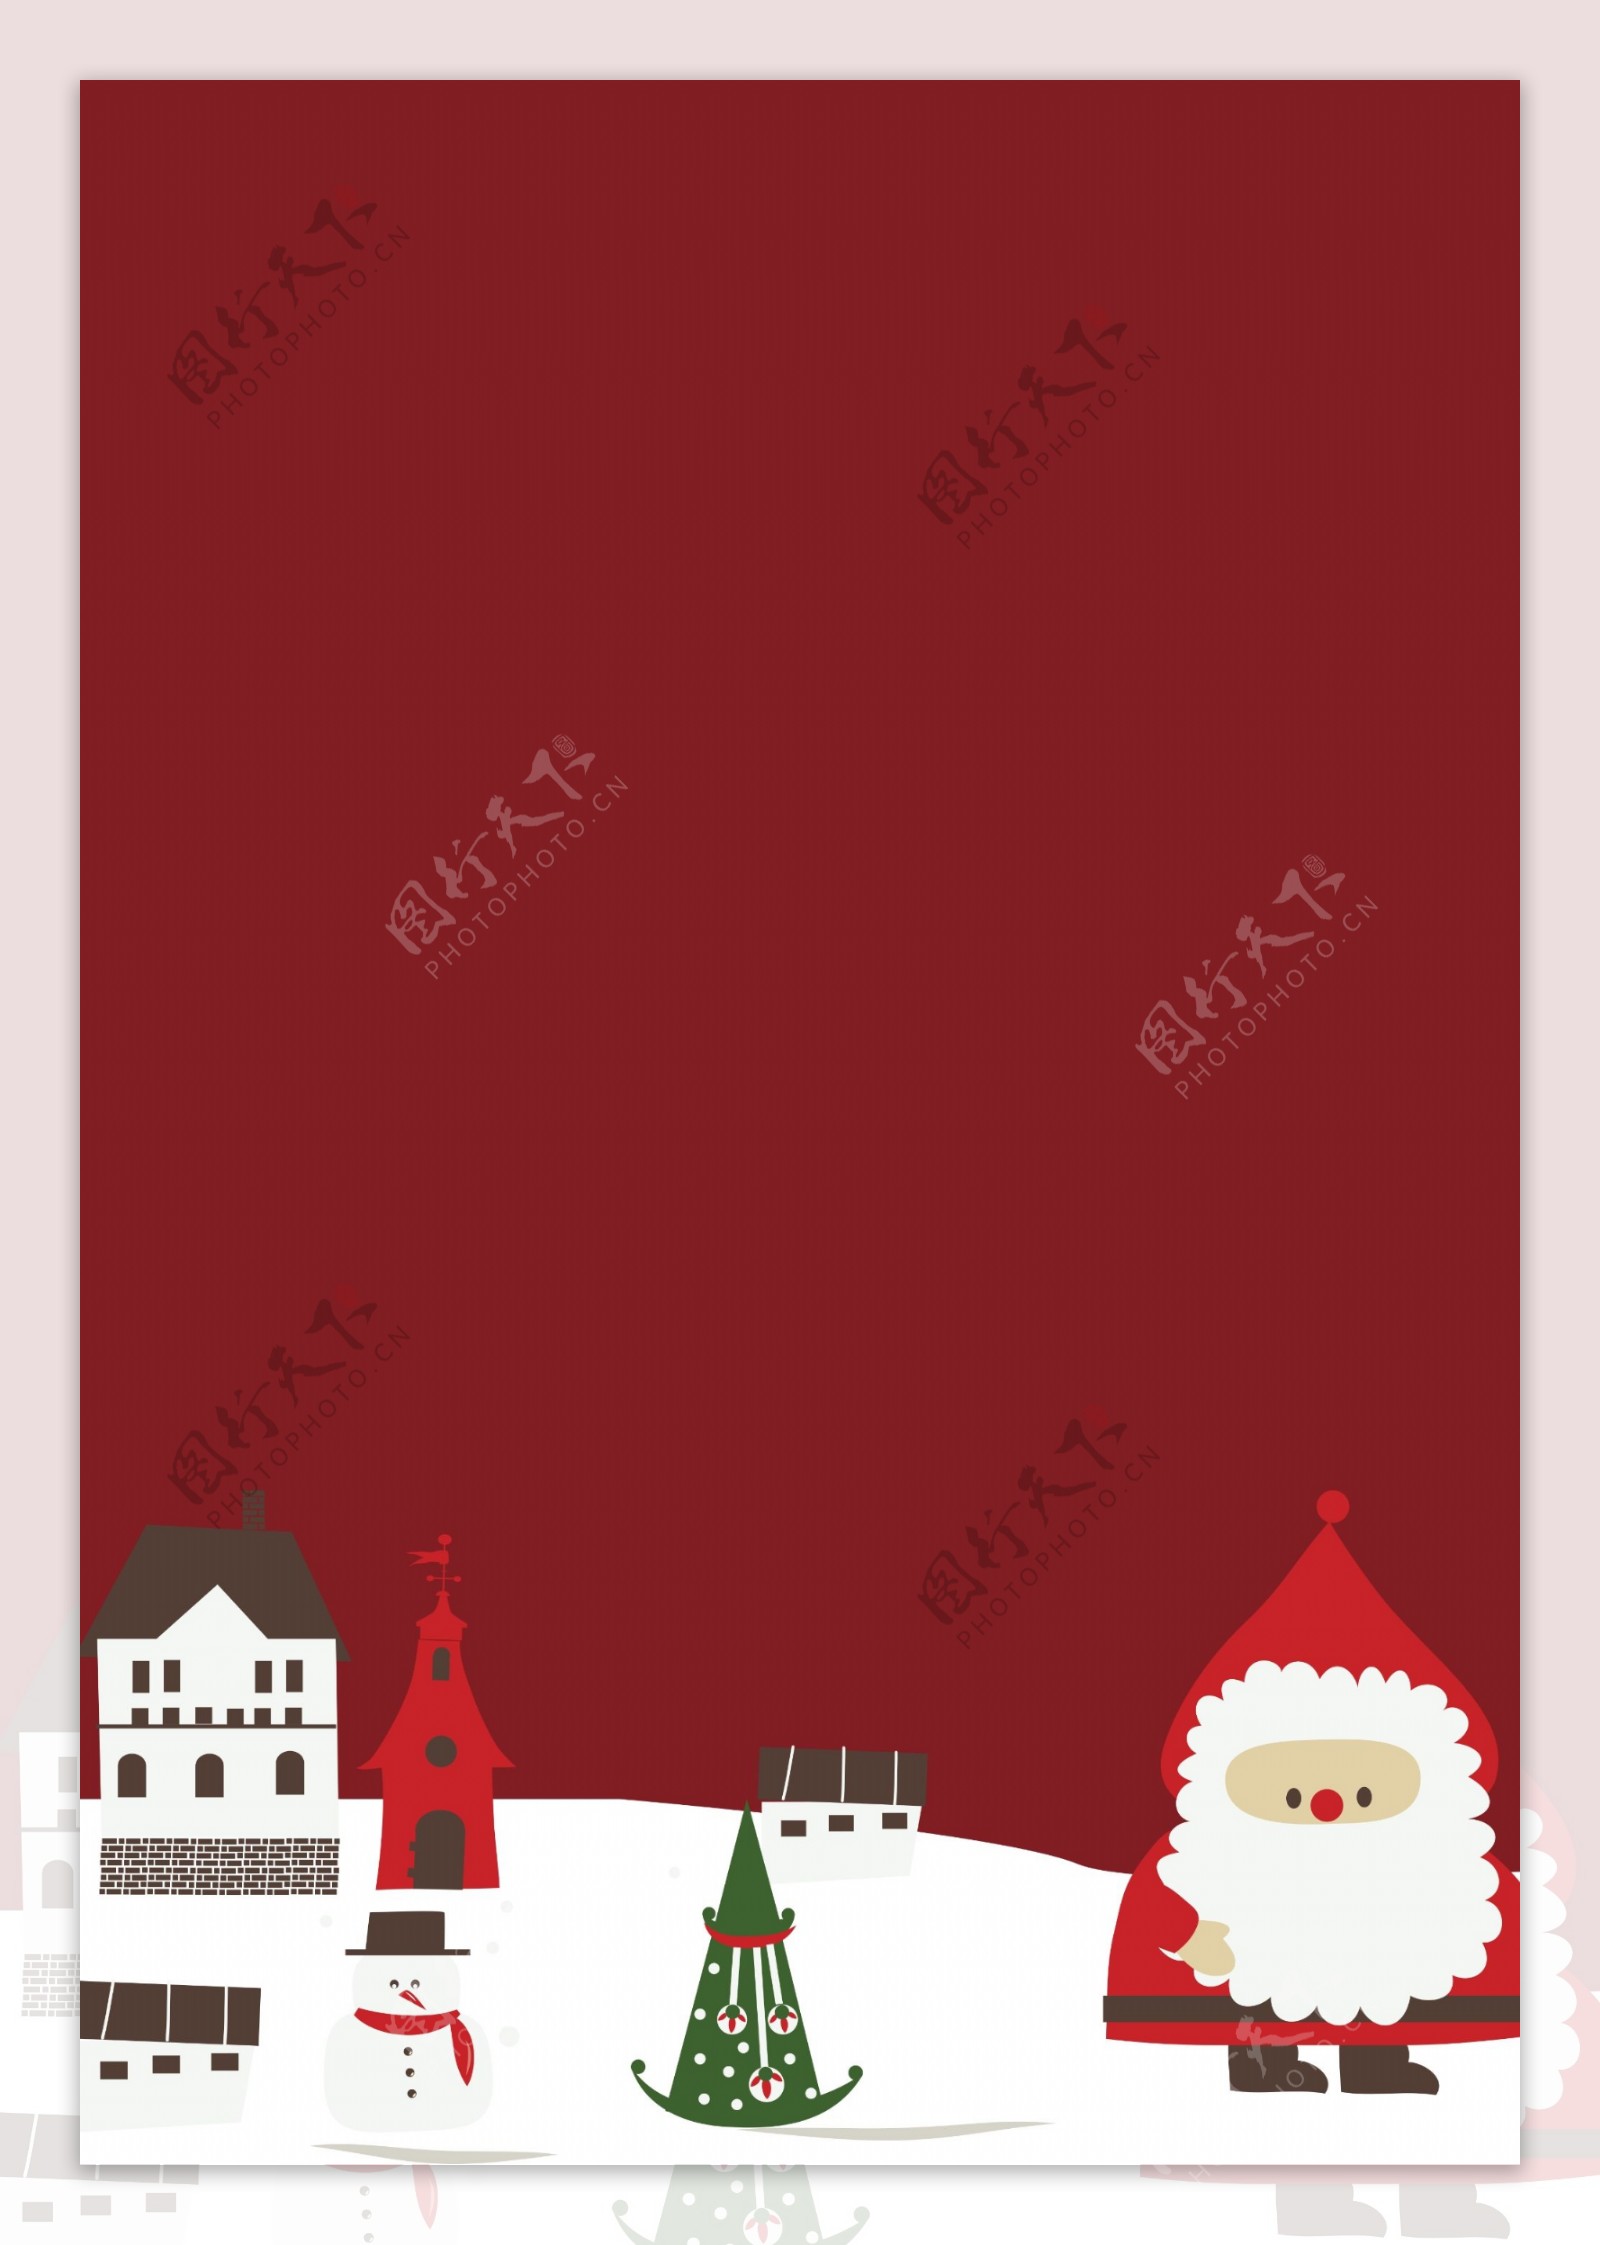 简约红色圣诞节背景设计